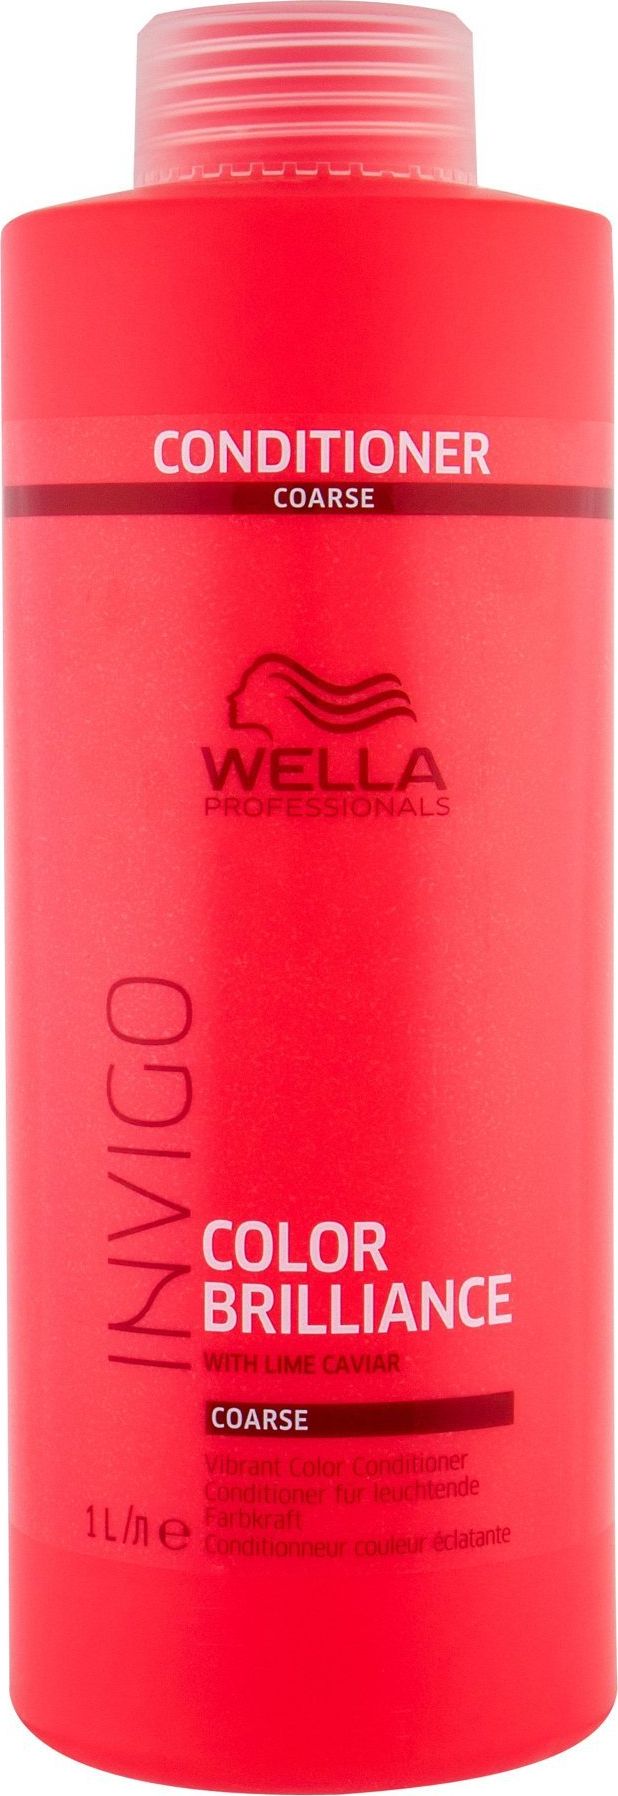 Wella Invigo Color Brilliance Coarse Vibrant 1000 ml este o vopsea pentru păr de la Wella, perfectă pentru părul rebel și aspru. Aceasta oferă o culoare vibrantă și îngrijire intensă, protejând în același timp părul de la radiațiile UV și păstrându-l